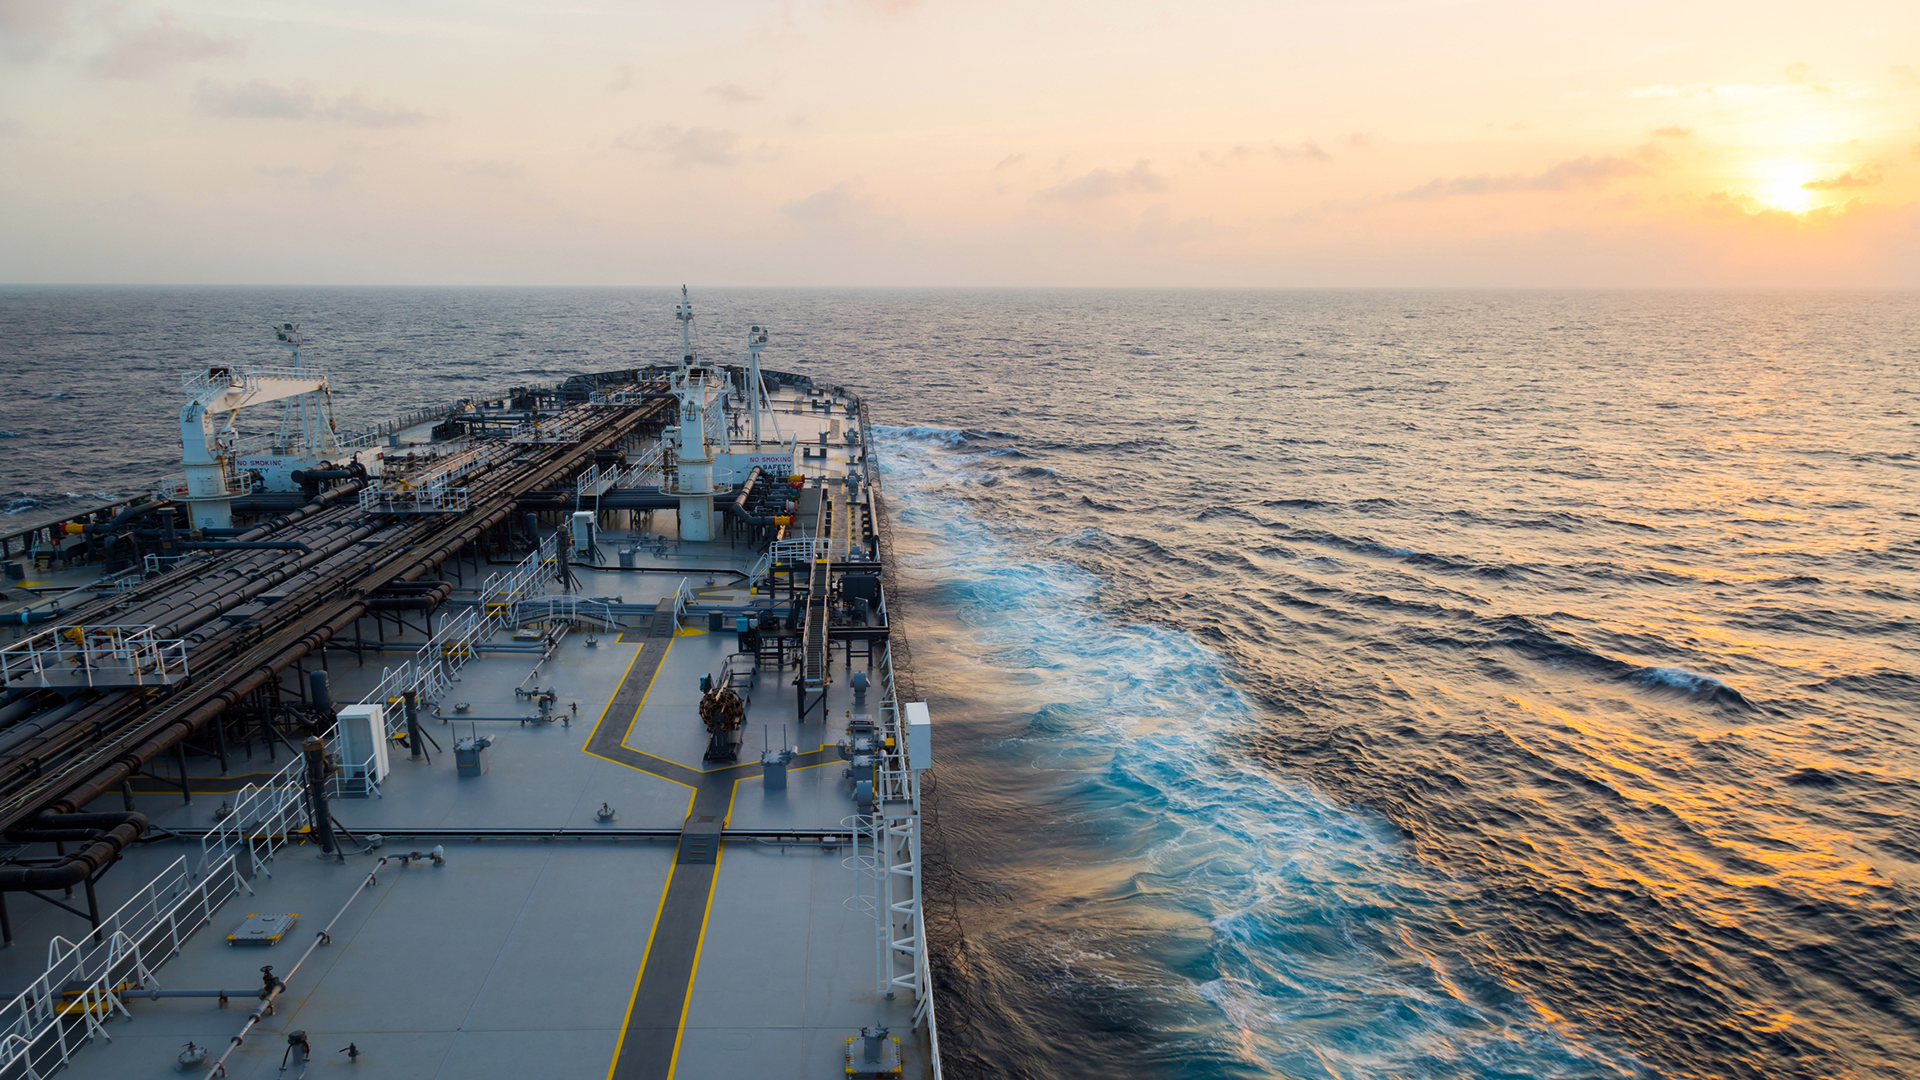 Big grey oil tanker underway in the open sea